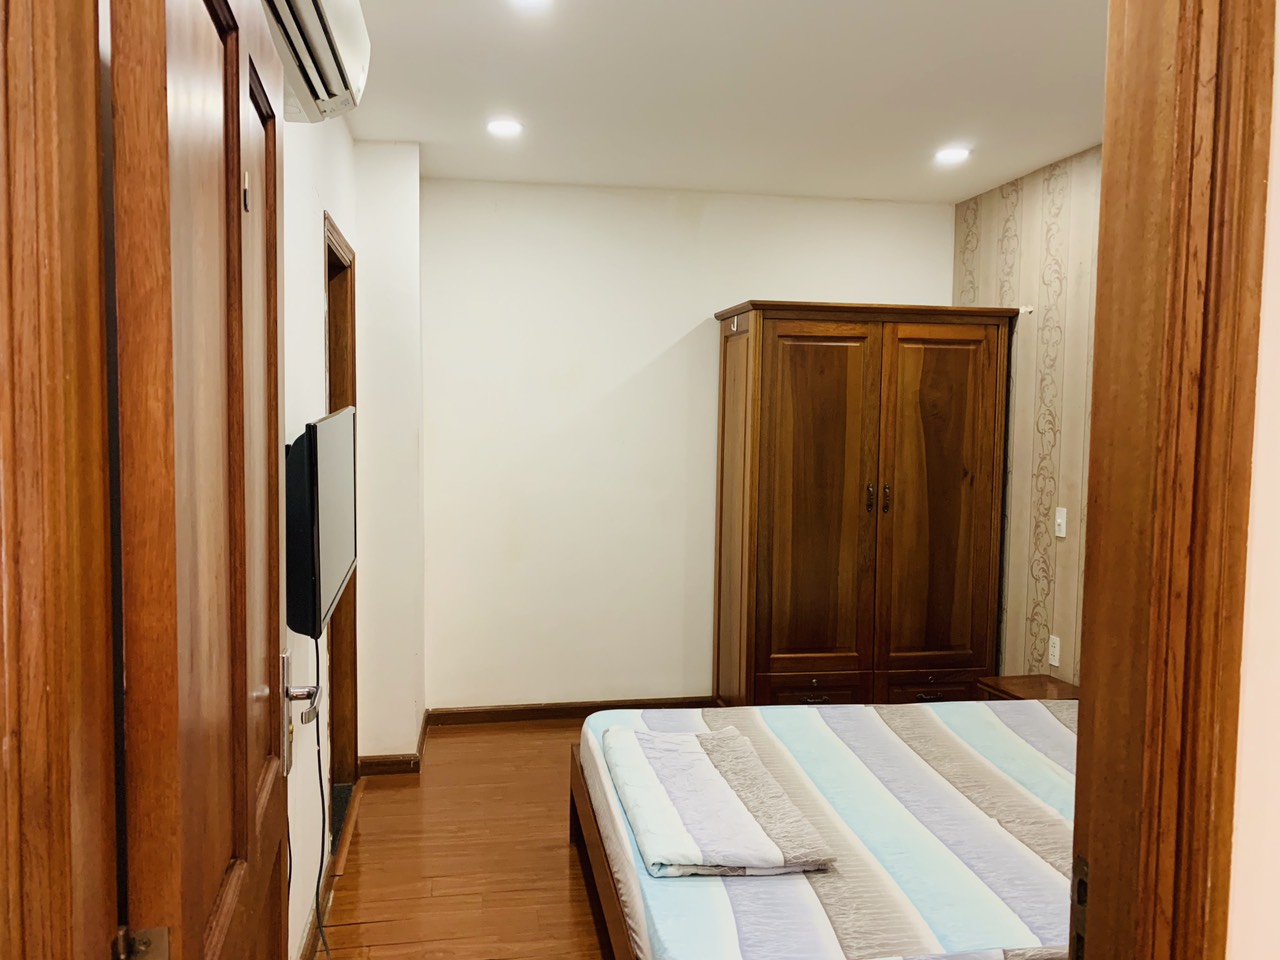 Cho thuê CHDV Lam Sơn 2 phòng ngủ/2WC full tiện nghi #15 Triệu / Tháng – Tel 0942.811.343đi xem thực tế nhiều căn hộ